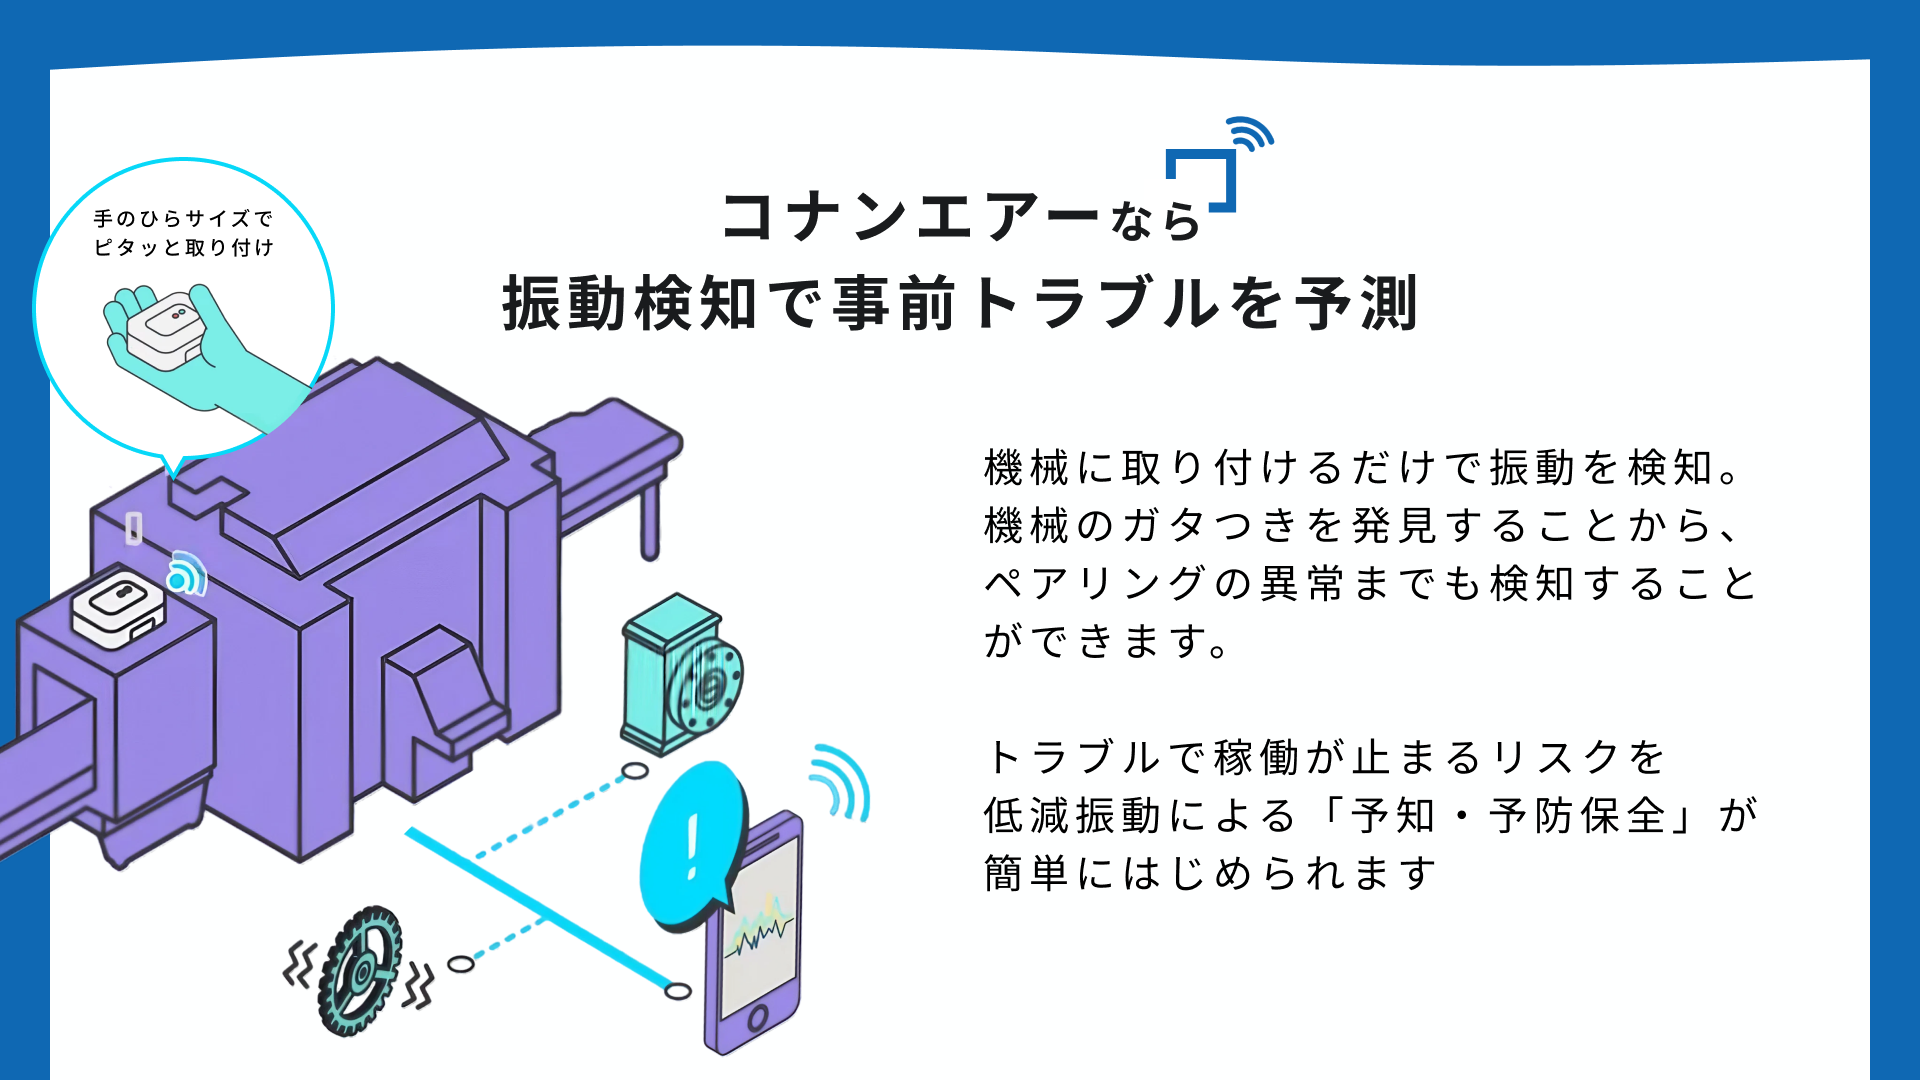 Wi-Fi 振動モニタリングシステム conanair